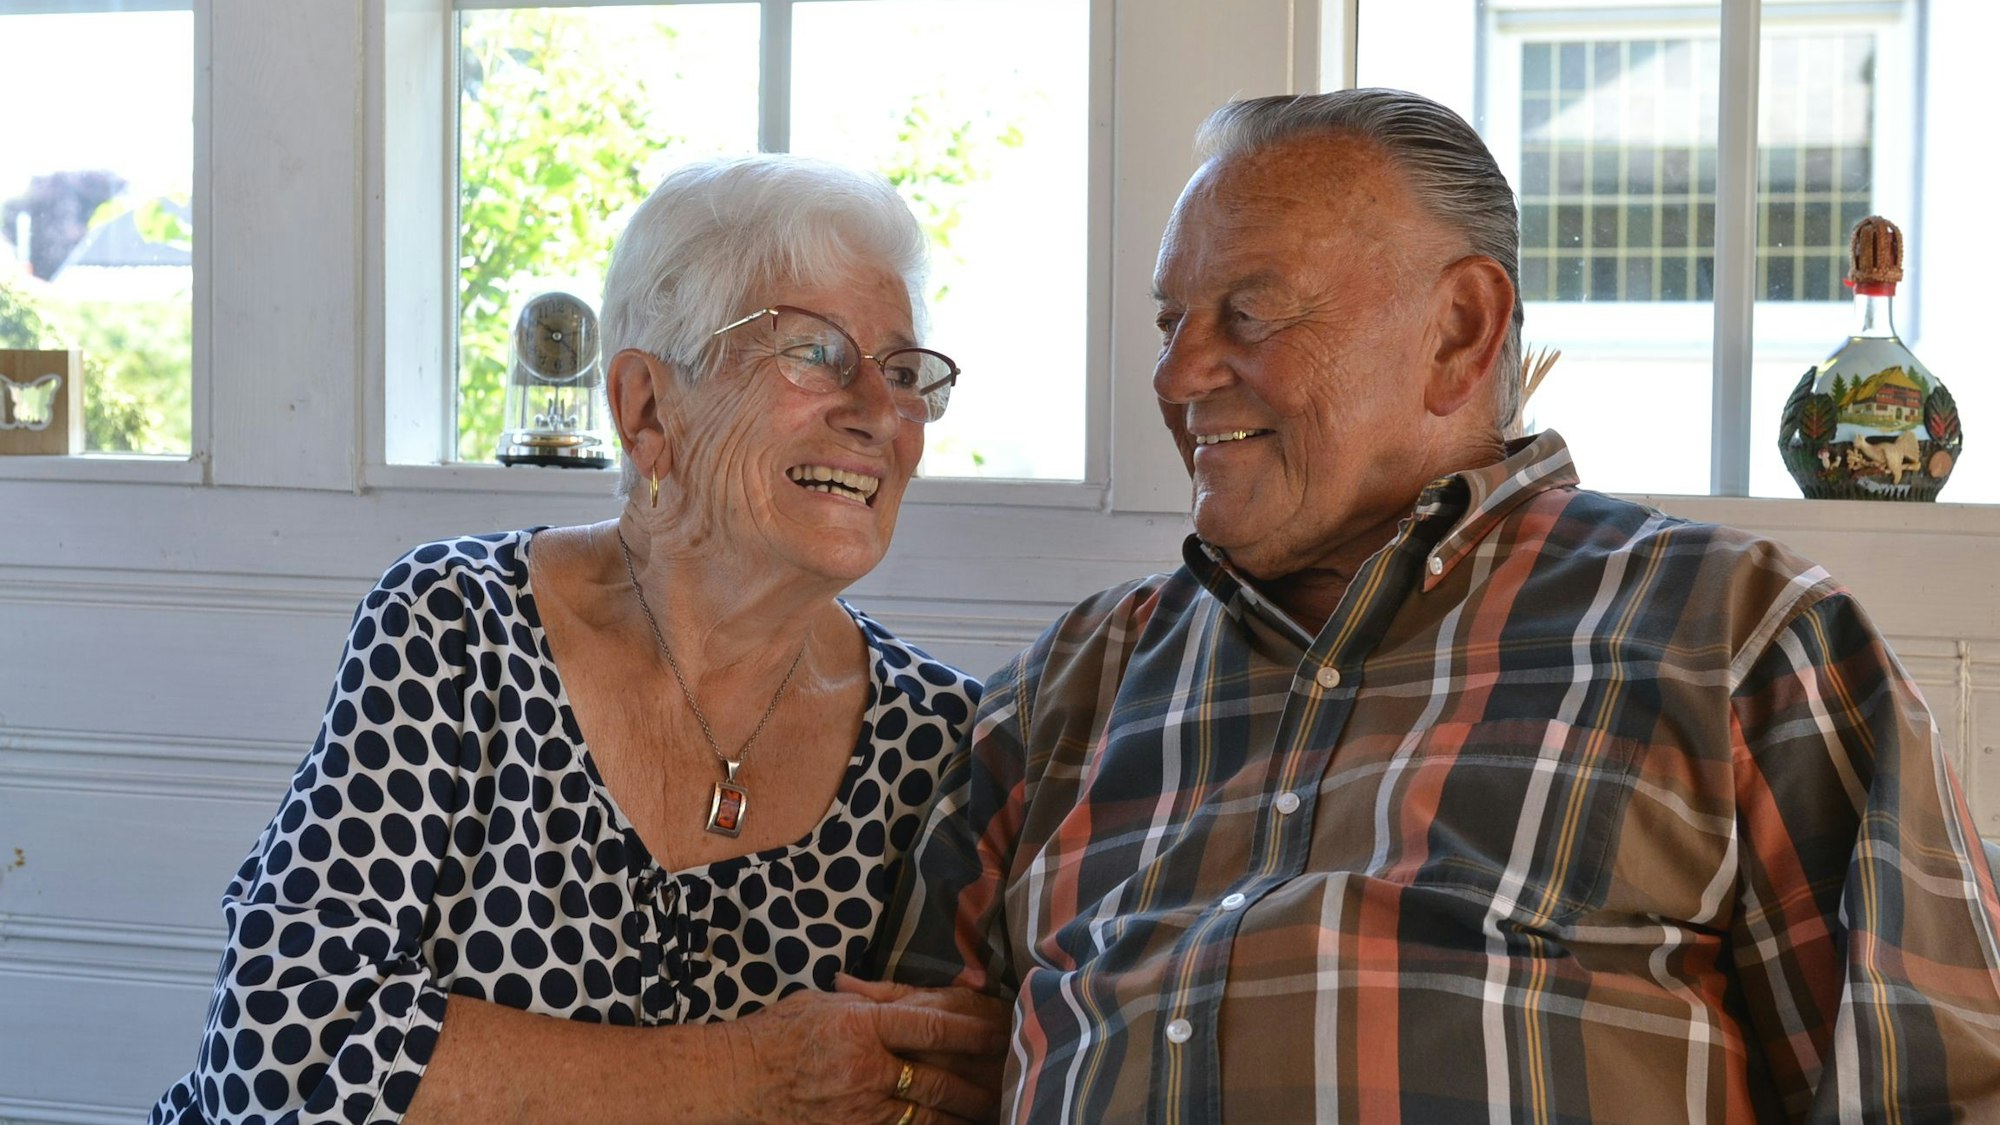 Inge und David Wagner schauen sich auch nach 60 Ehejahren noch verliebt in die Augen.